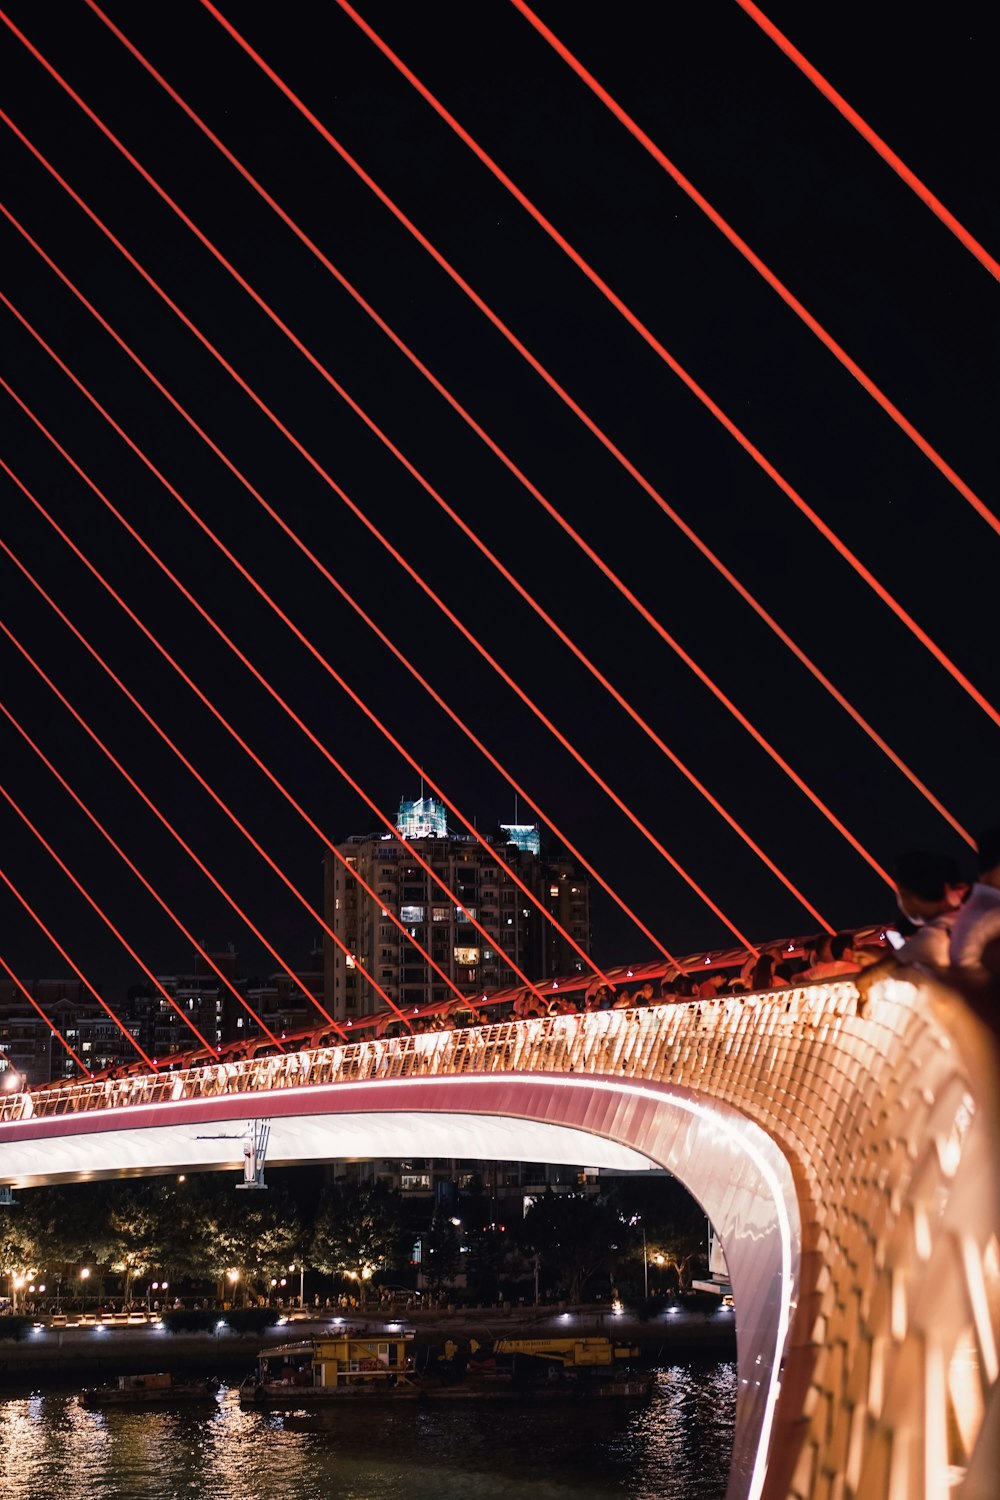 personnes marchant sur le pont pendant la nuit